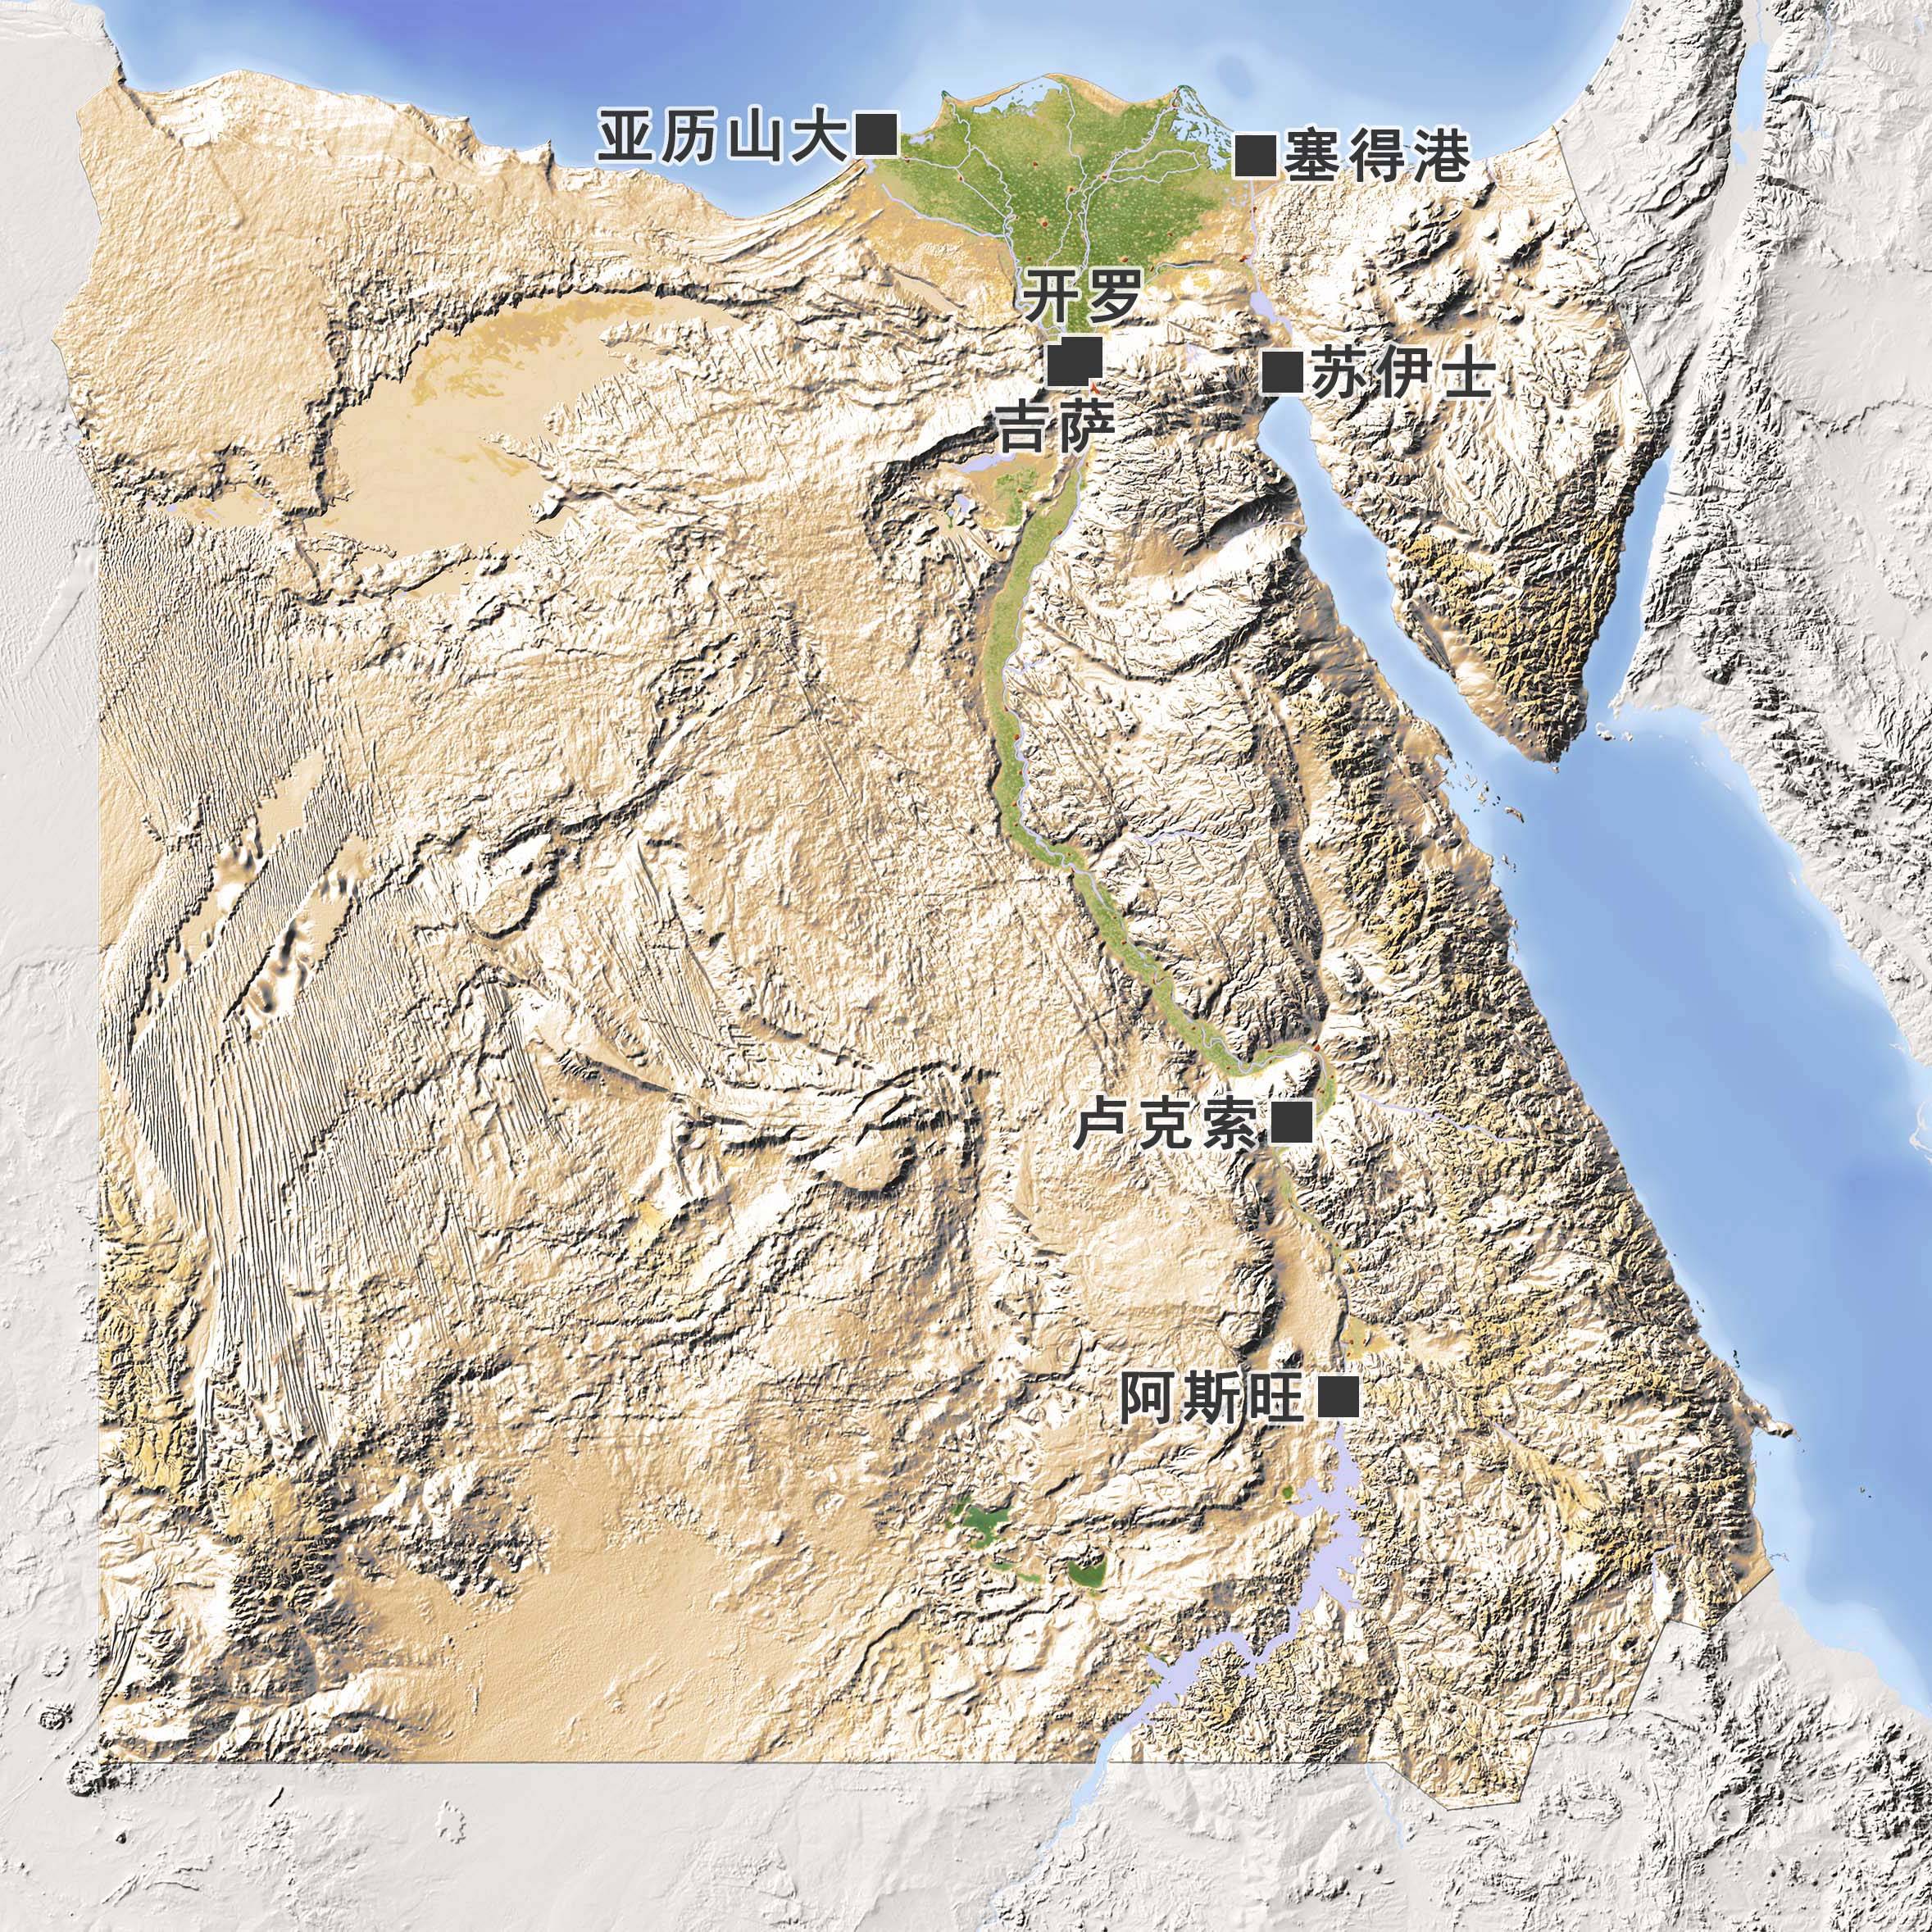 埃及地形分布图图片